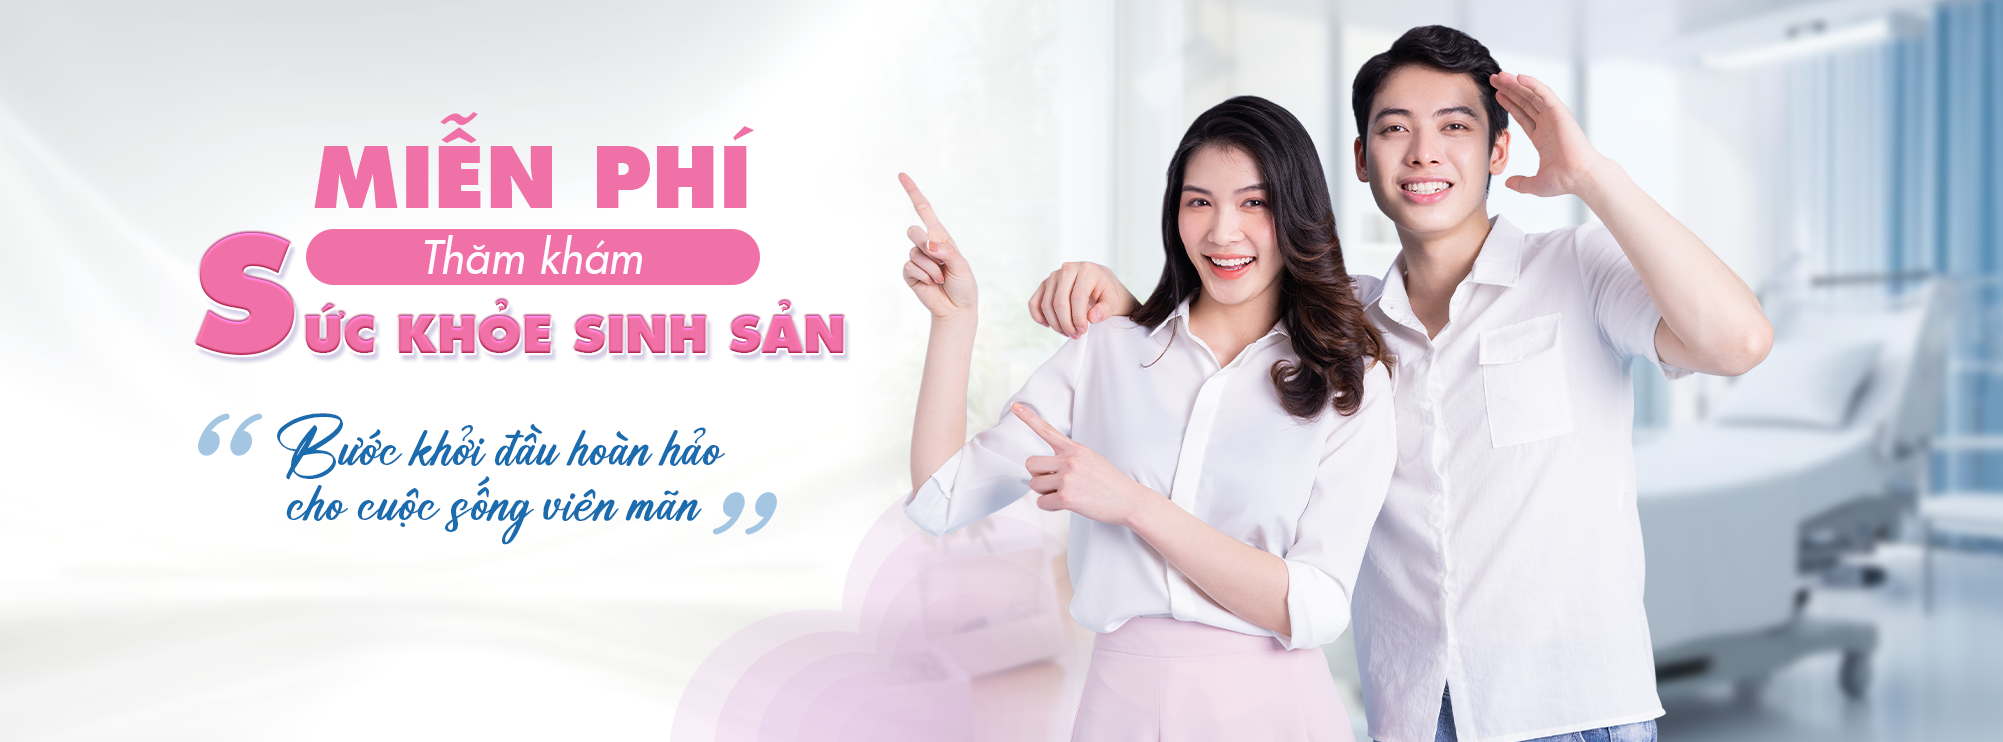 Banner Trang Chủ - Miễn phí thăm khám sức khỏe sinh sản